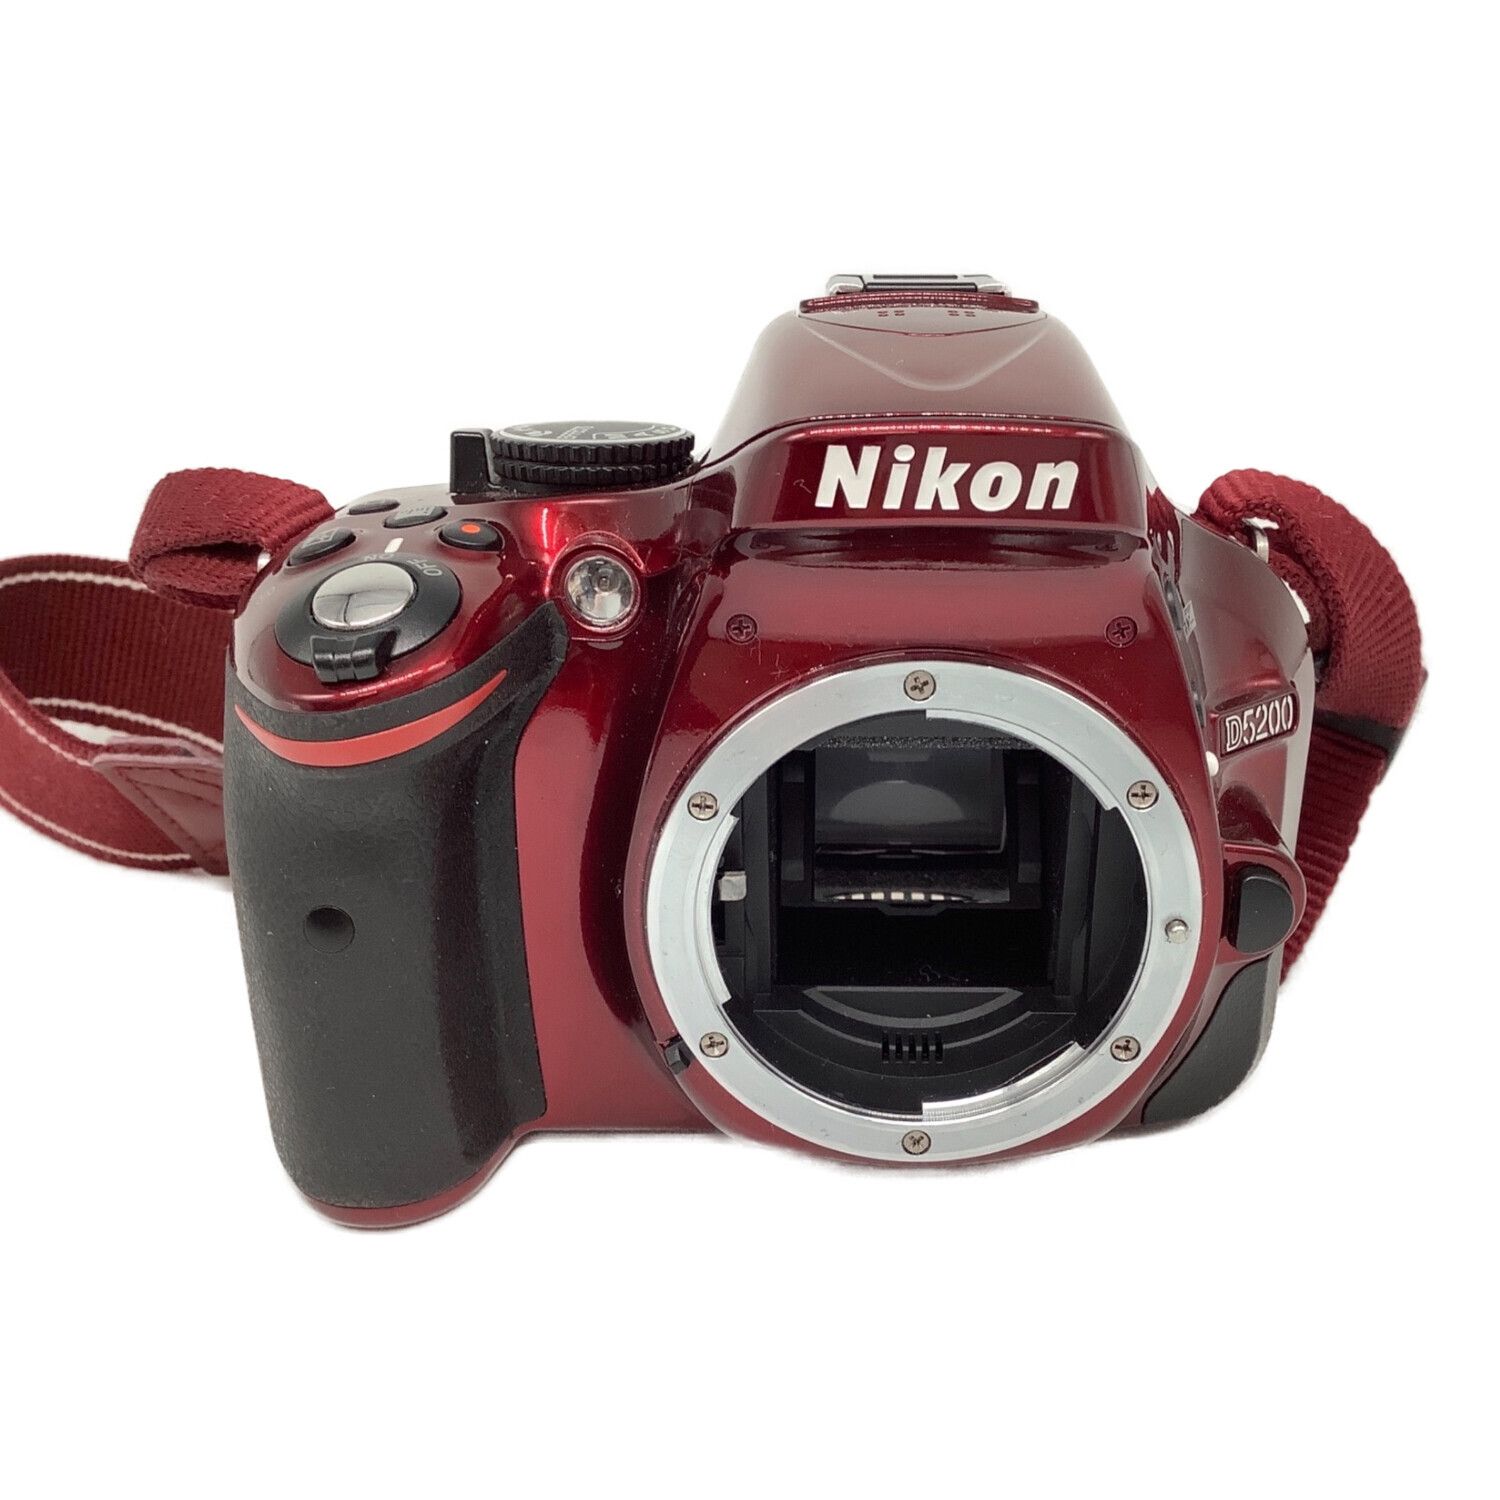 Nikon (ニコン) デジタル一眼レフカメラ D5200 ダブルズームキット